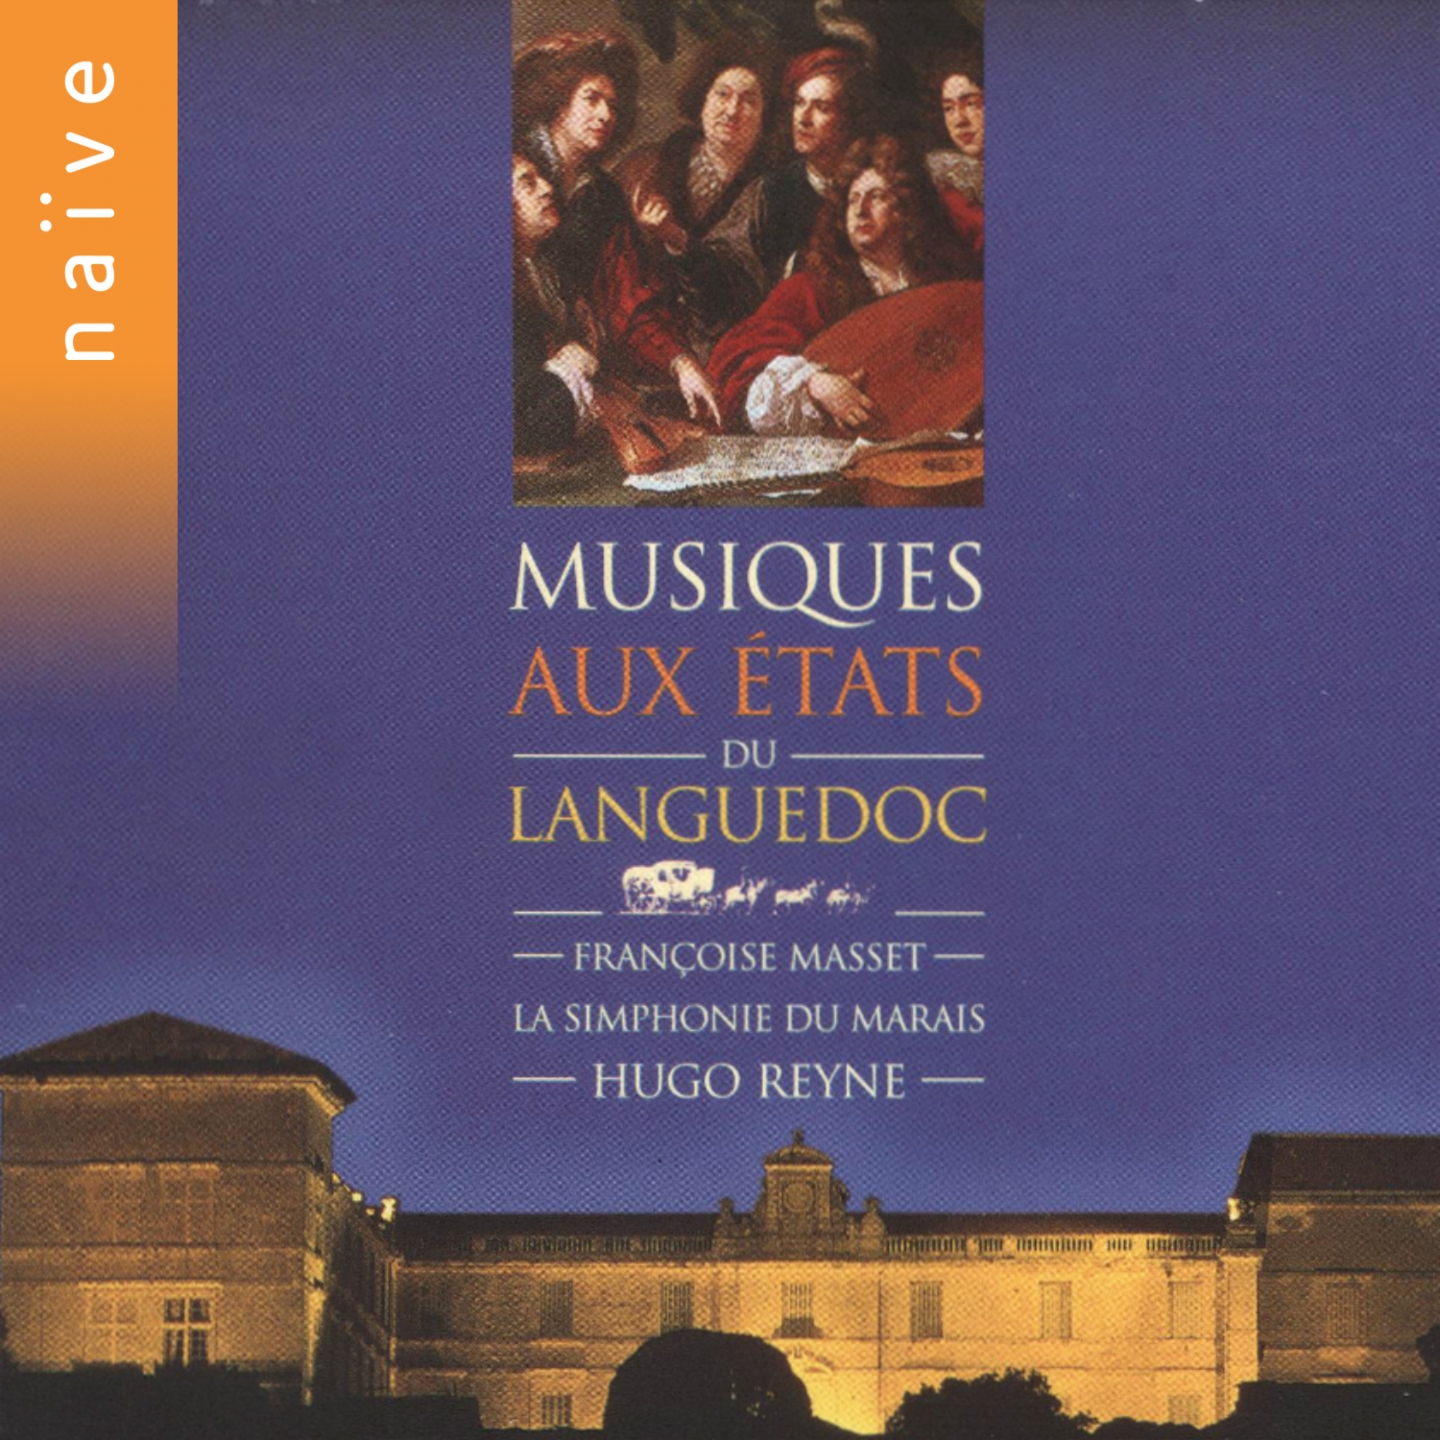 Musiques aux e tats du Languedoc